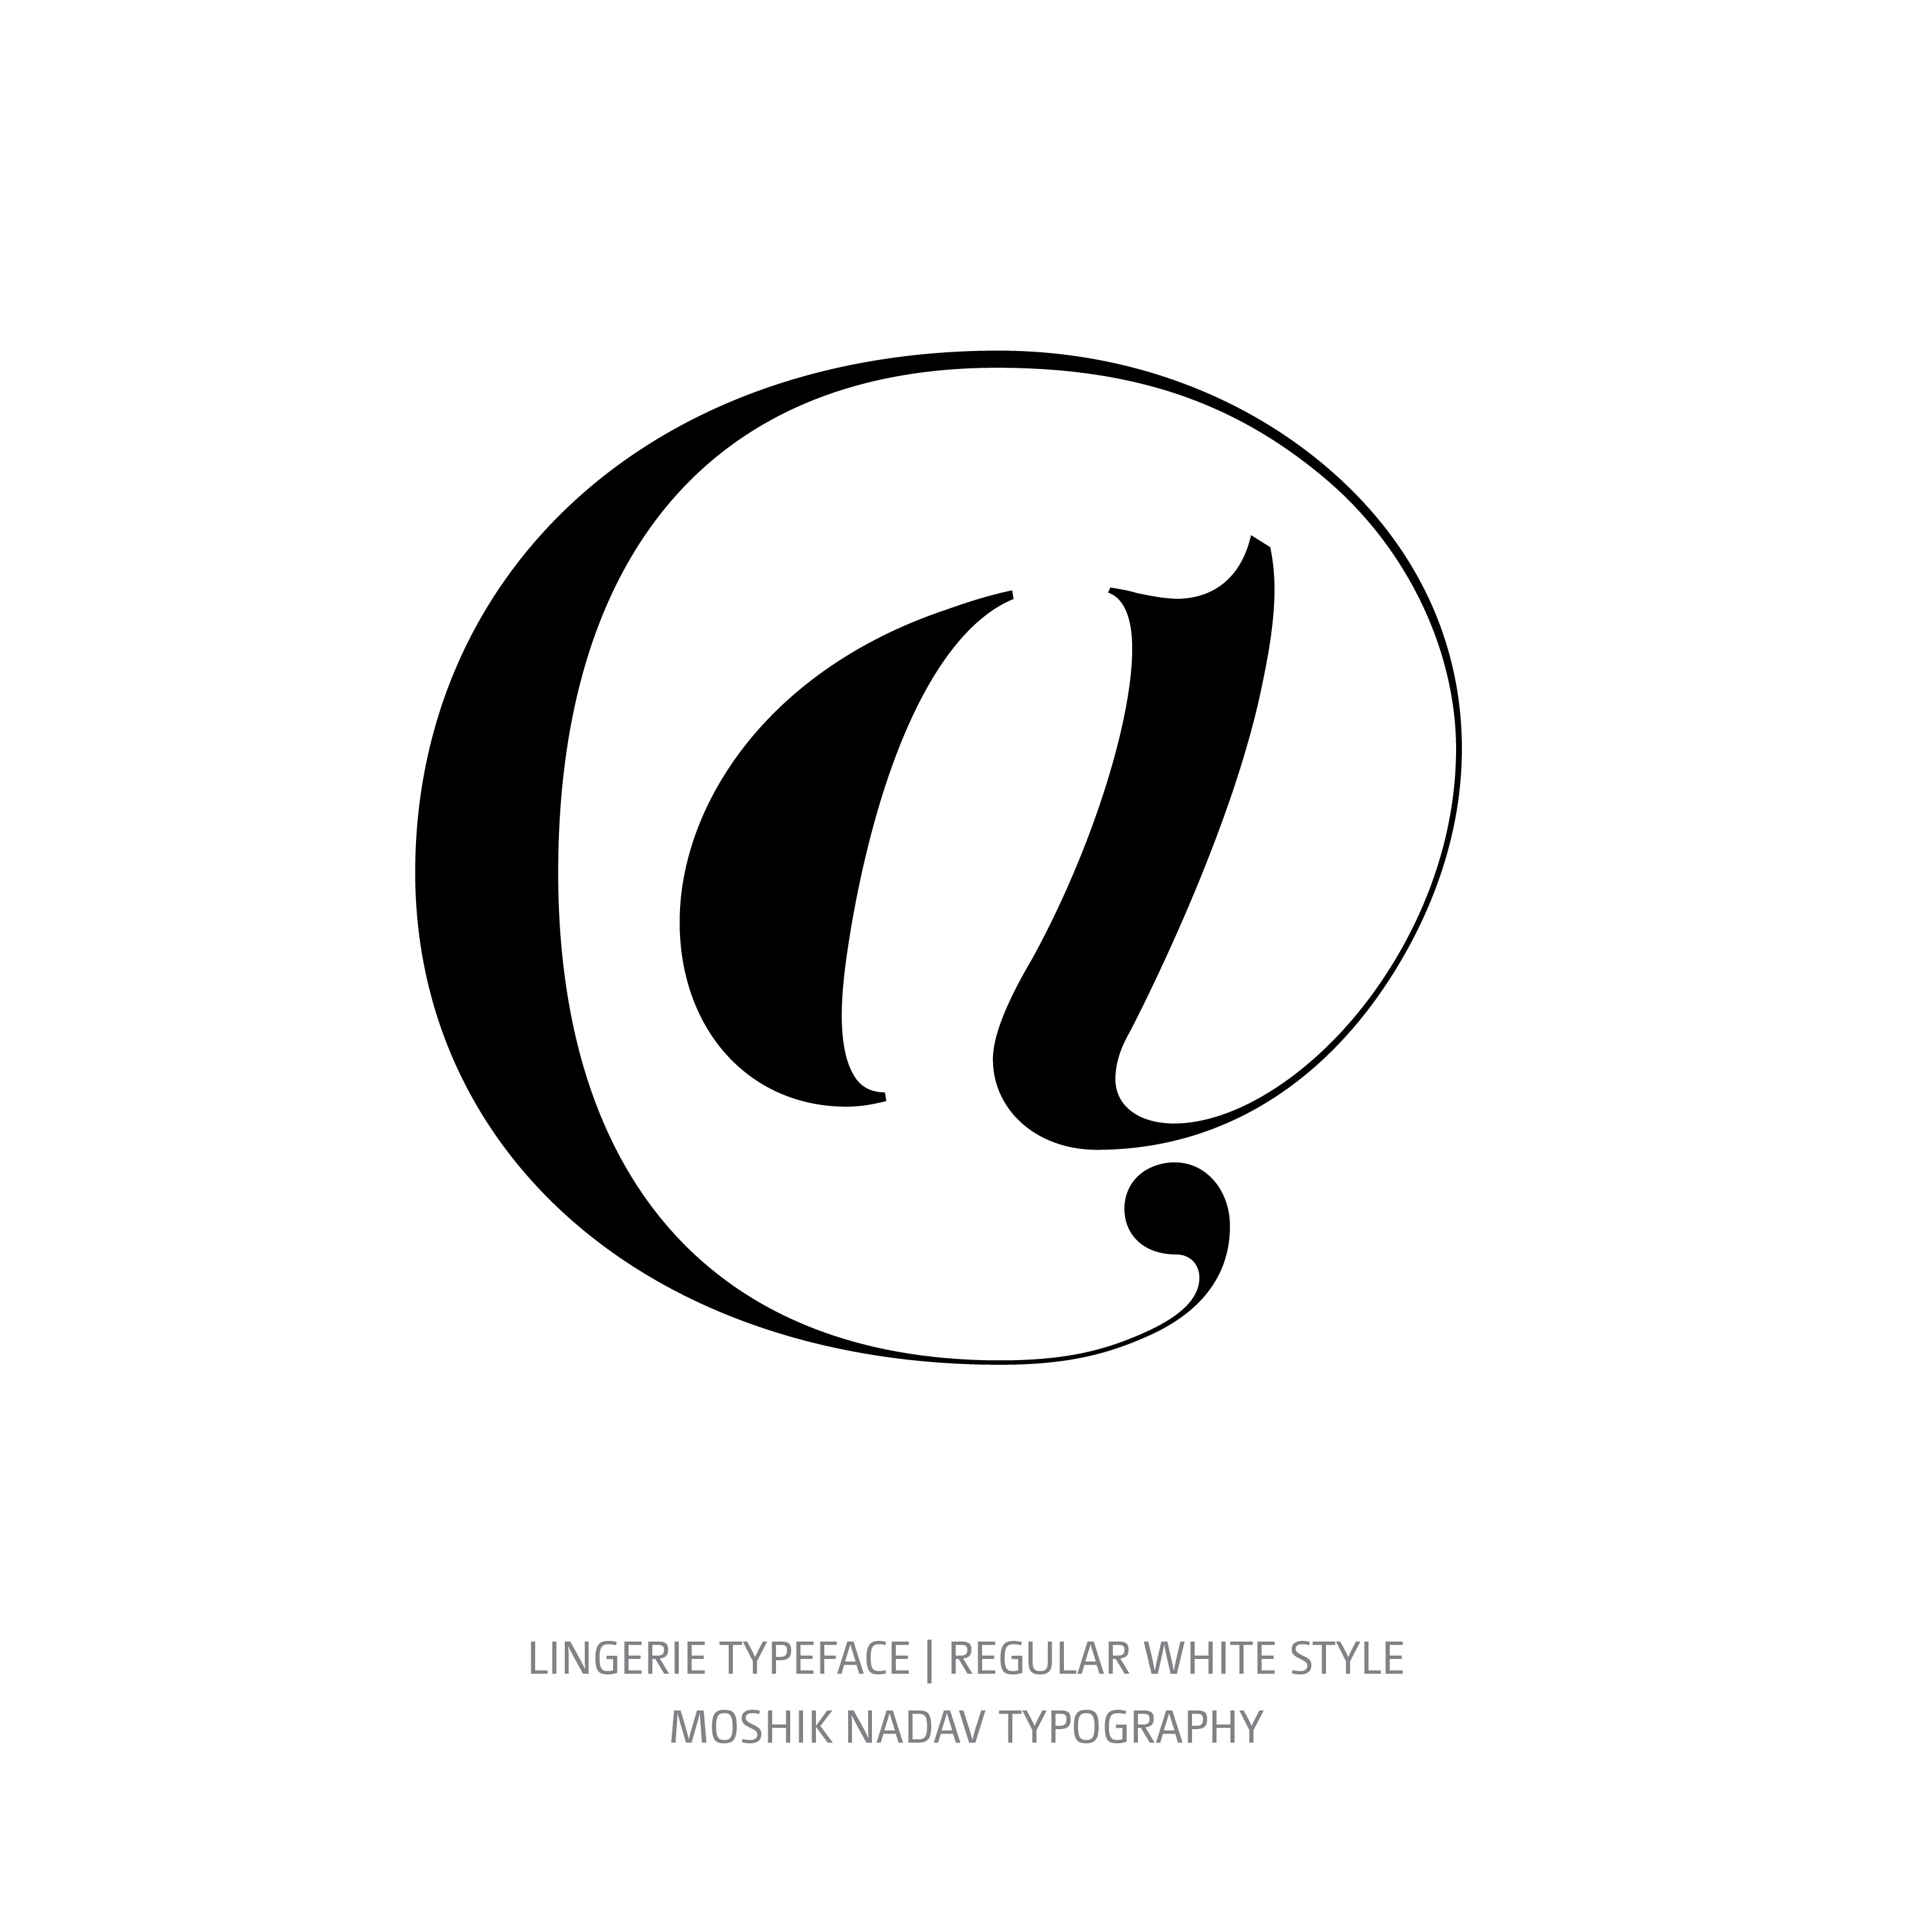 Lingerie Typeface Regular White @